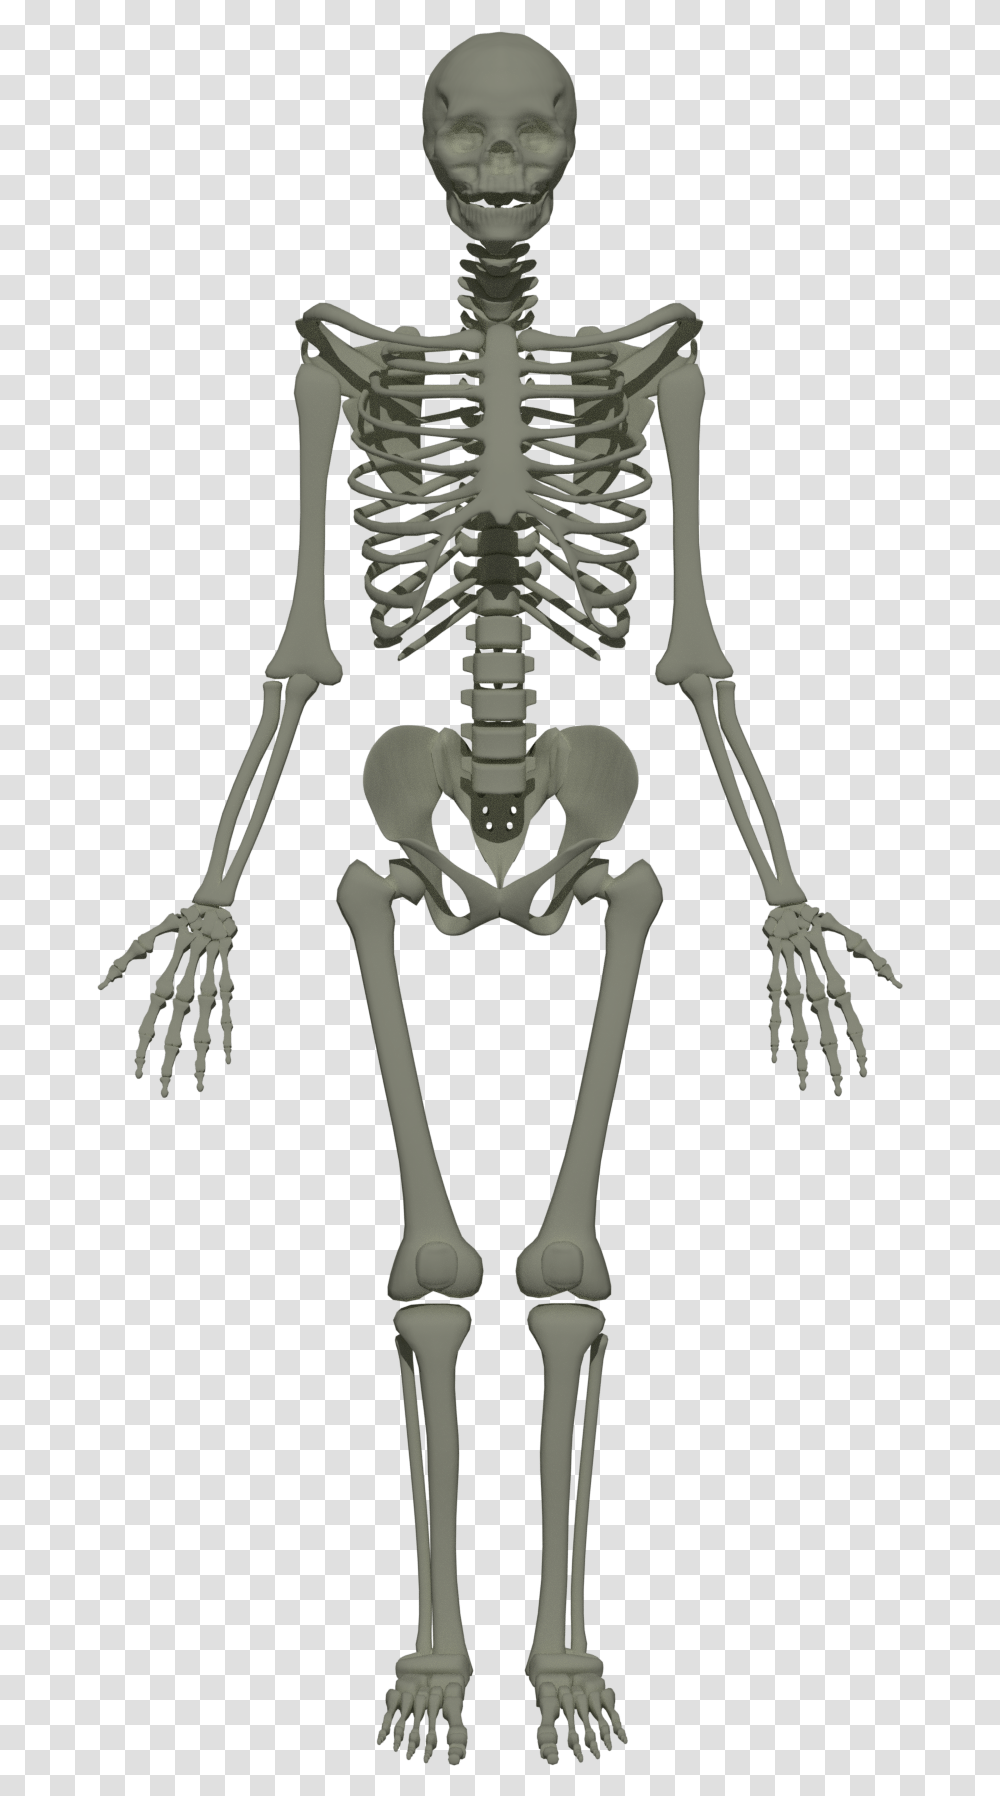 Human Skeleton Skeleton Of Human Body Transparent Png